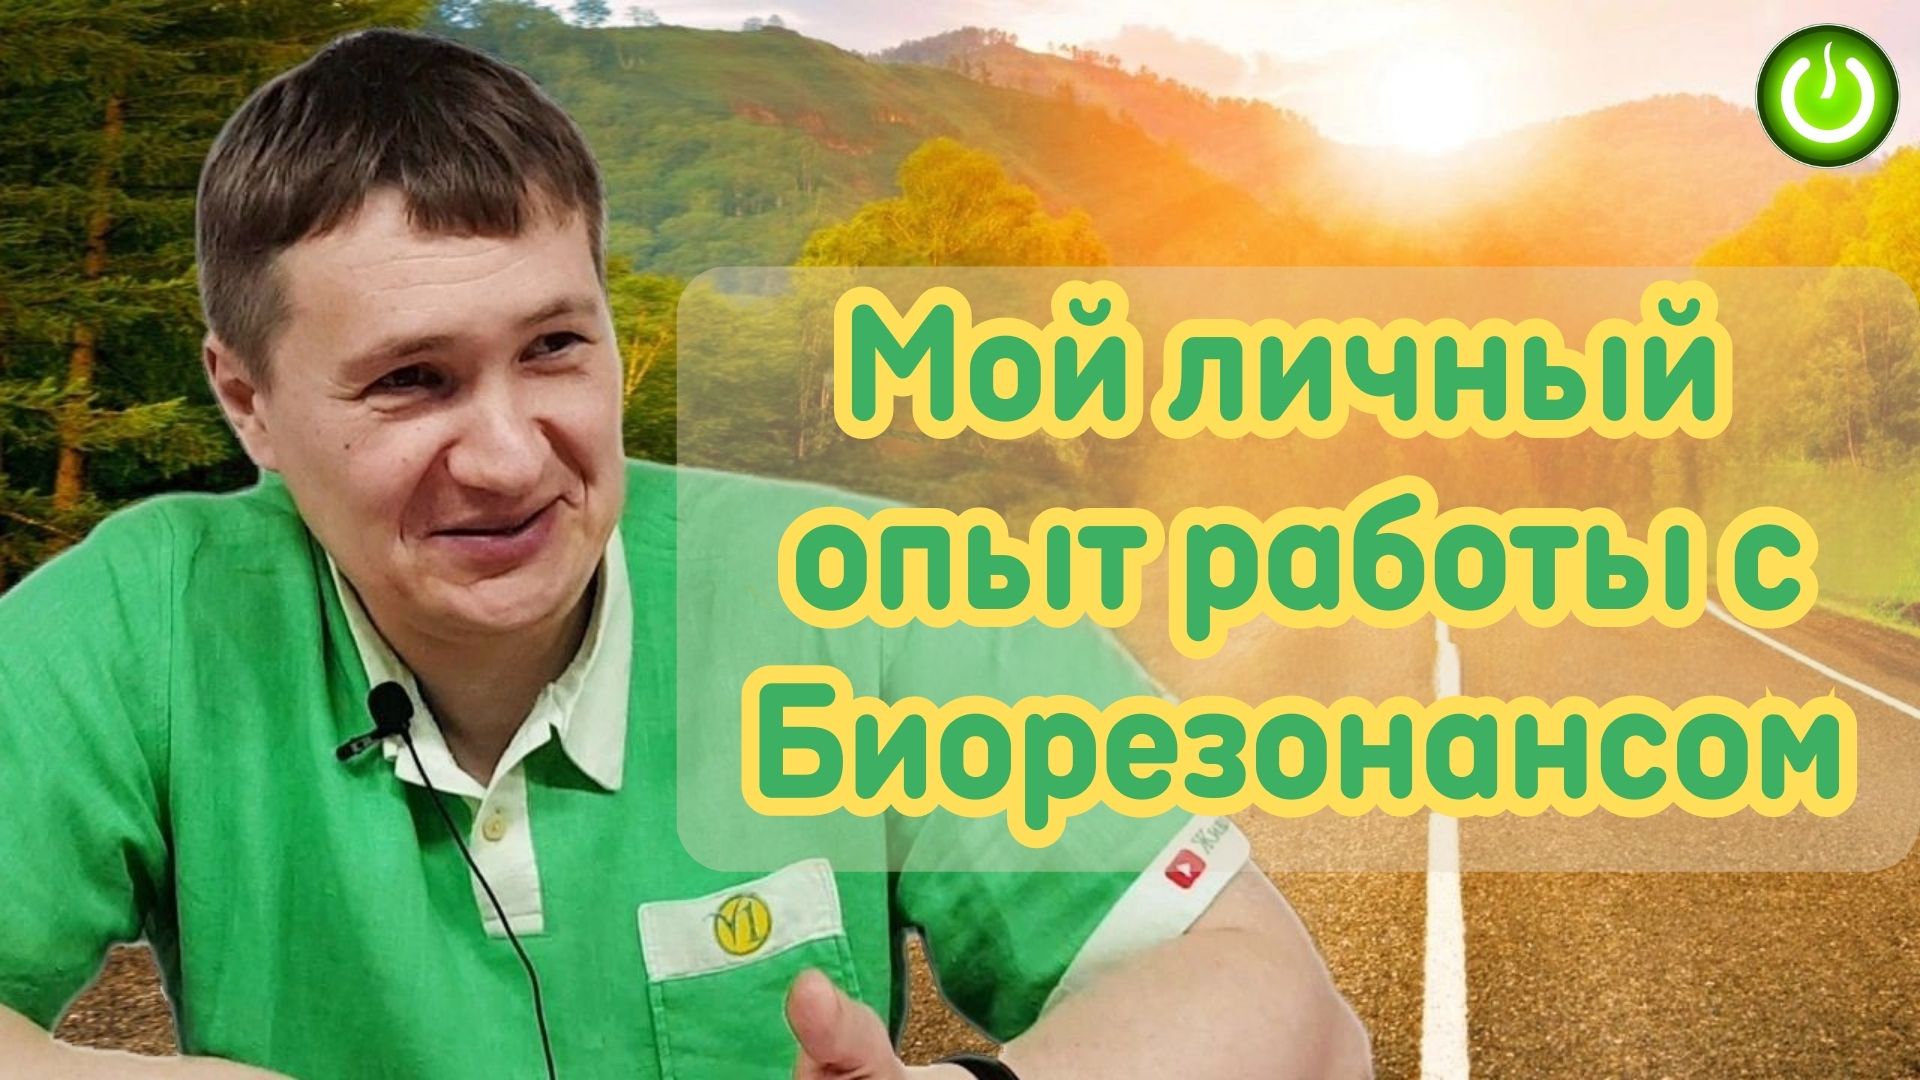 Евгений Агафонов, первые три месяца тестирования на себе решений "БиоТ...